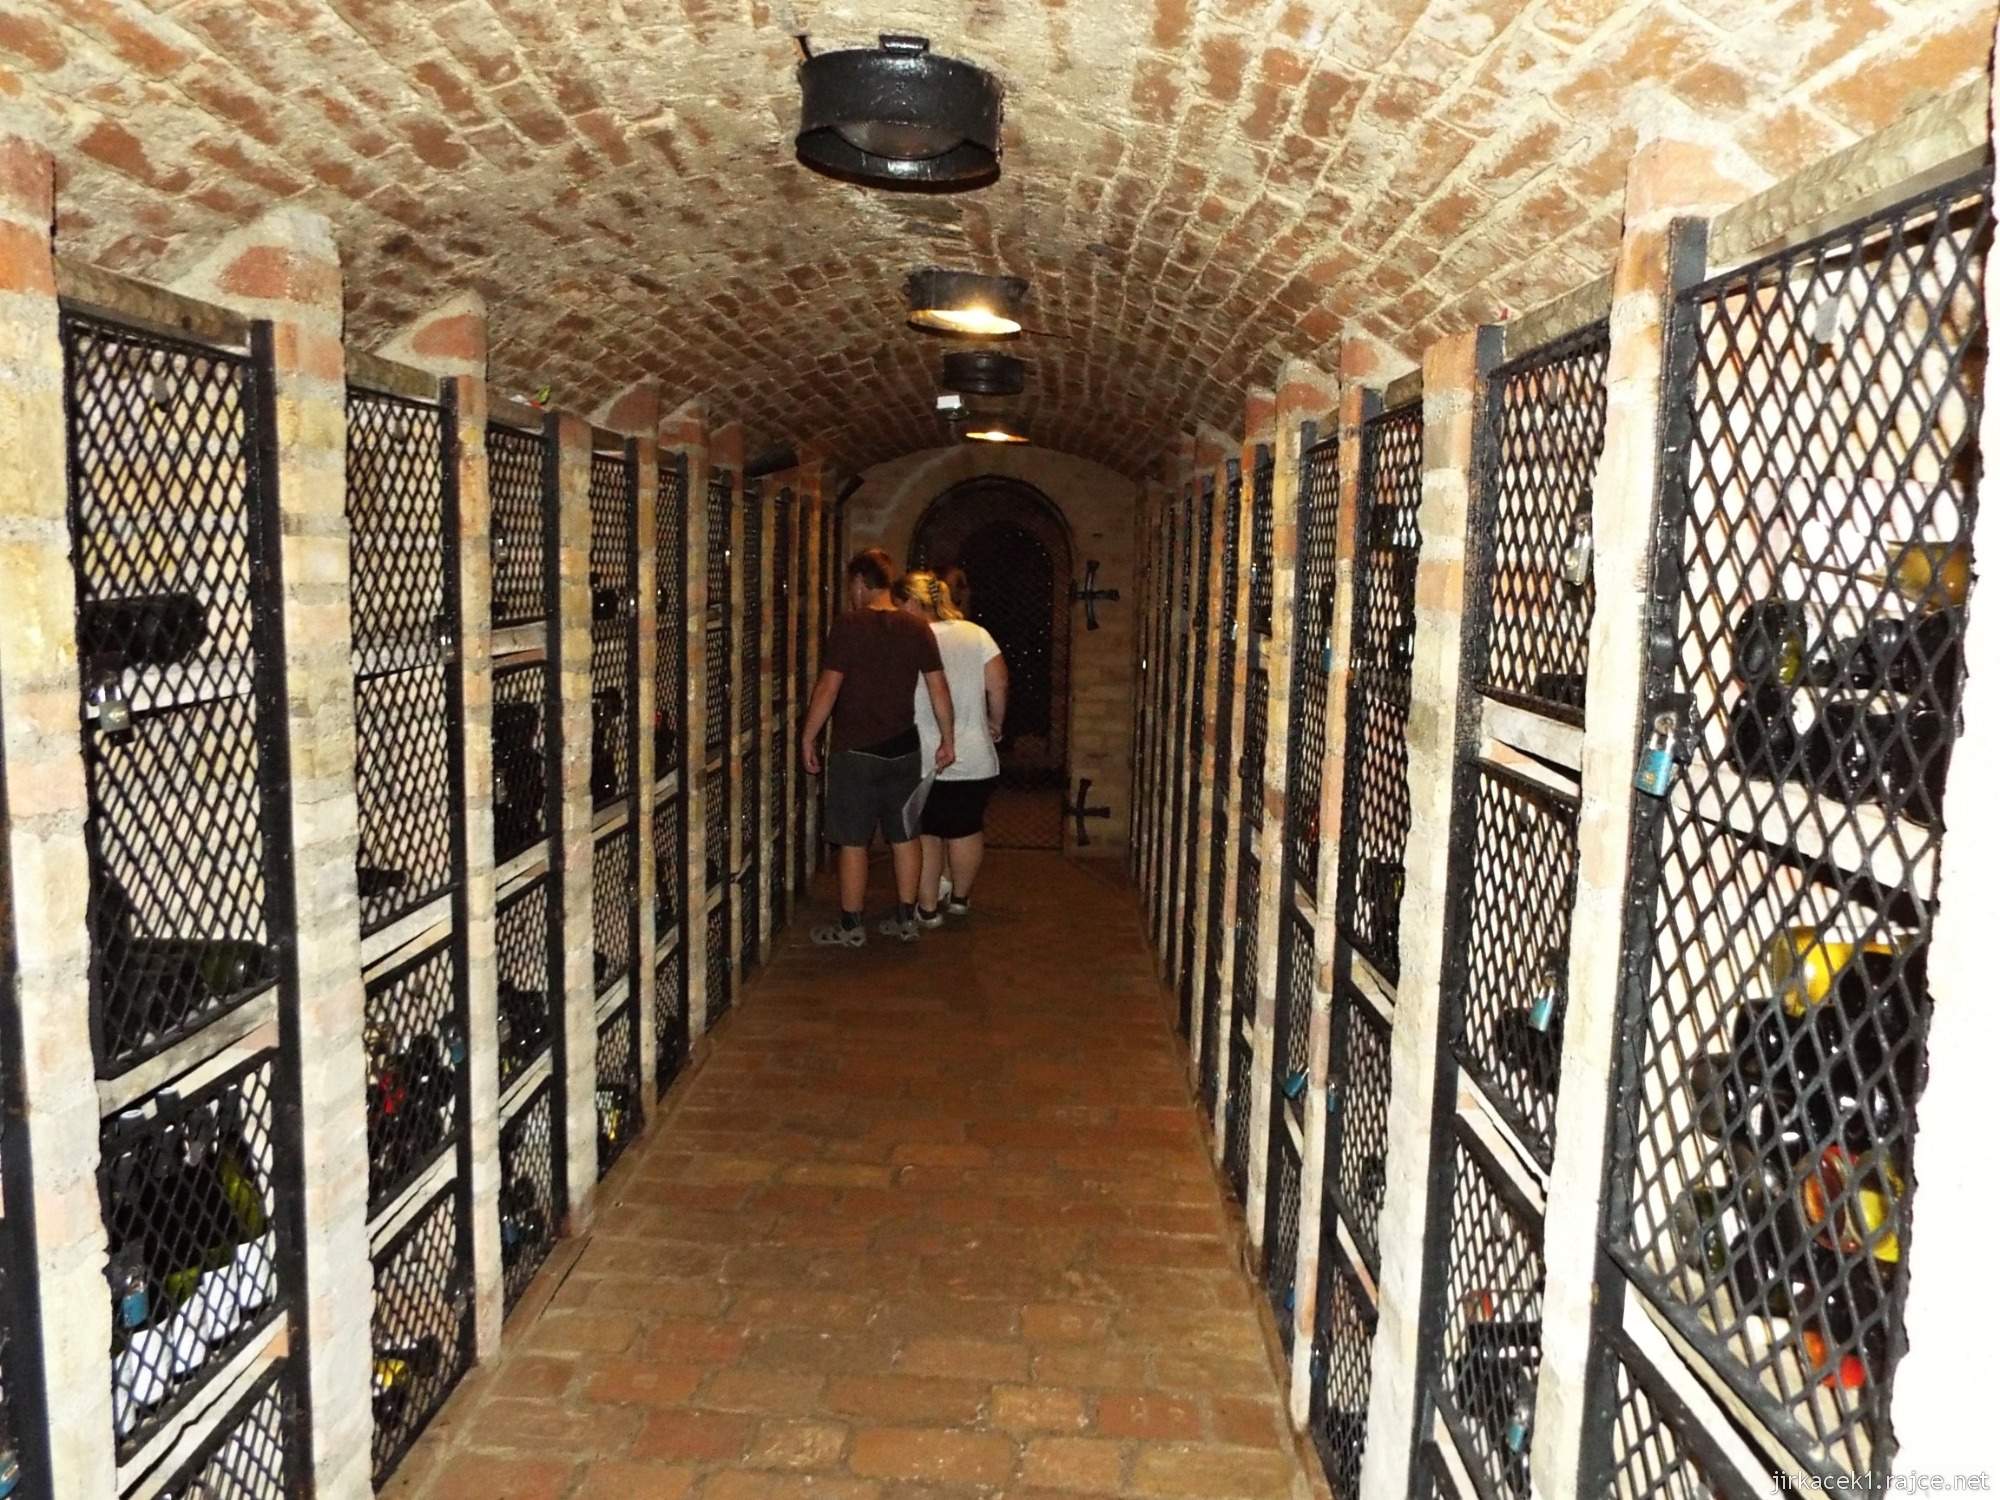 Valtické podzemí 41 - archívní sklep Hubert